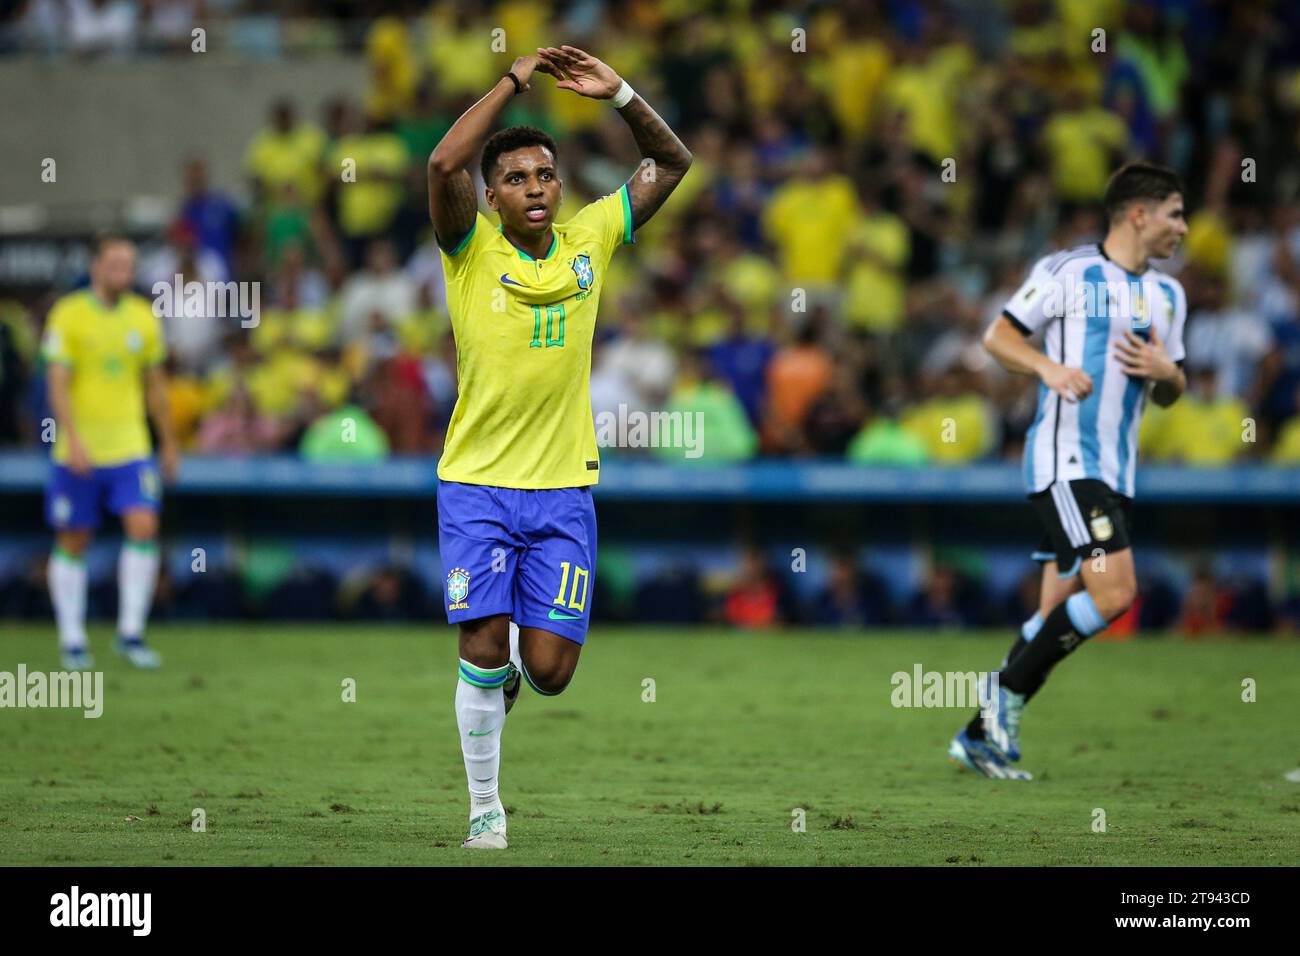 Rodrygo, Brazil player Stock Photo